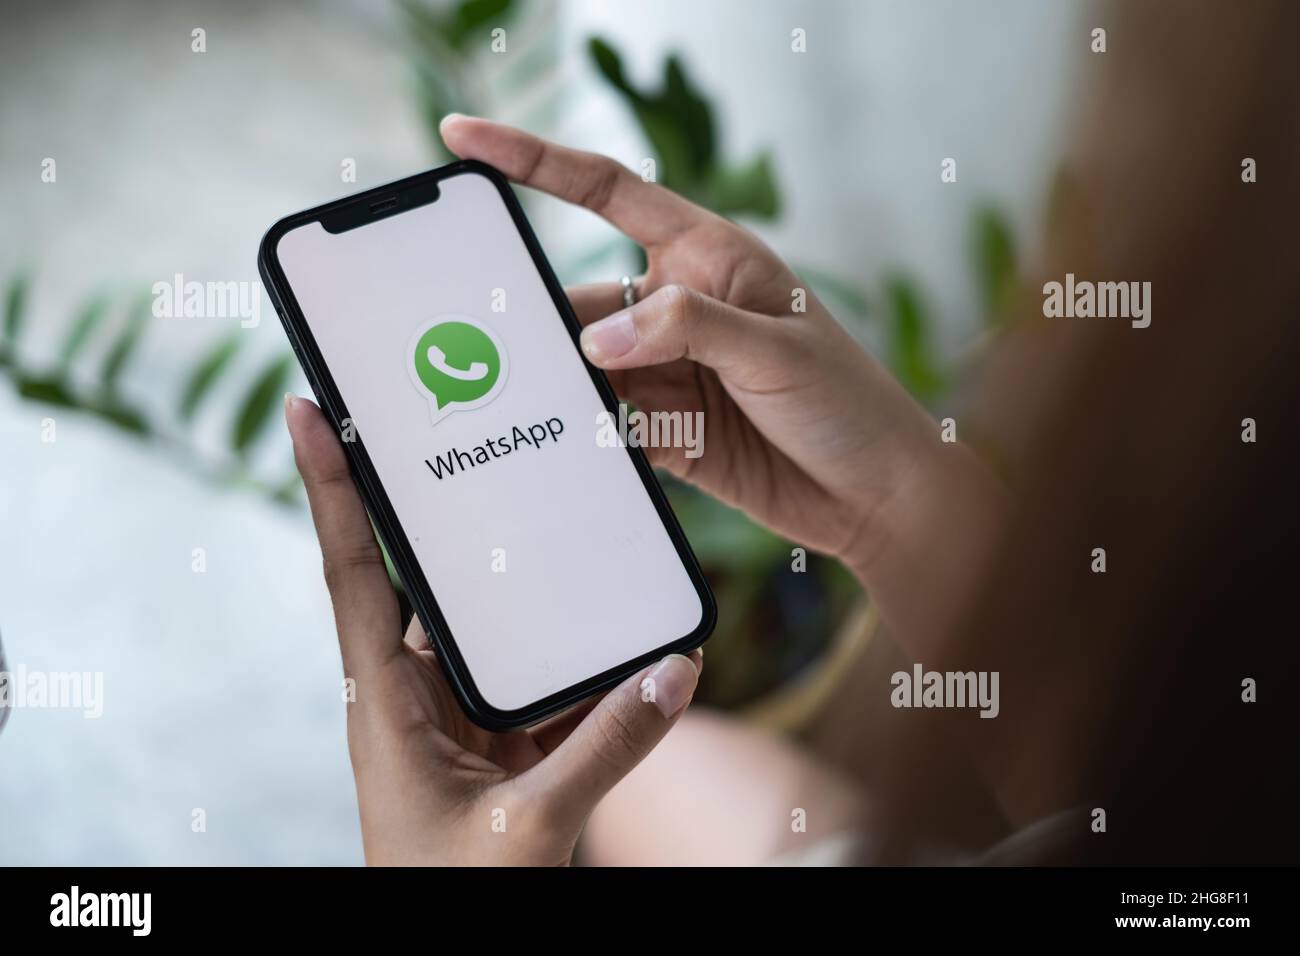 CHIANG MAI, THAILAND - JAN 16 2022 : Frau mit einem iPhone und öffnen sie appstore Suche Social Internet-Service WhatsApp auf dem Bildschirm. IPhone war Stockfoto